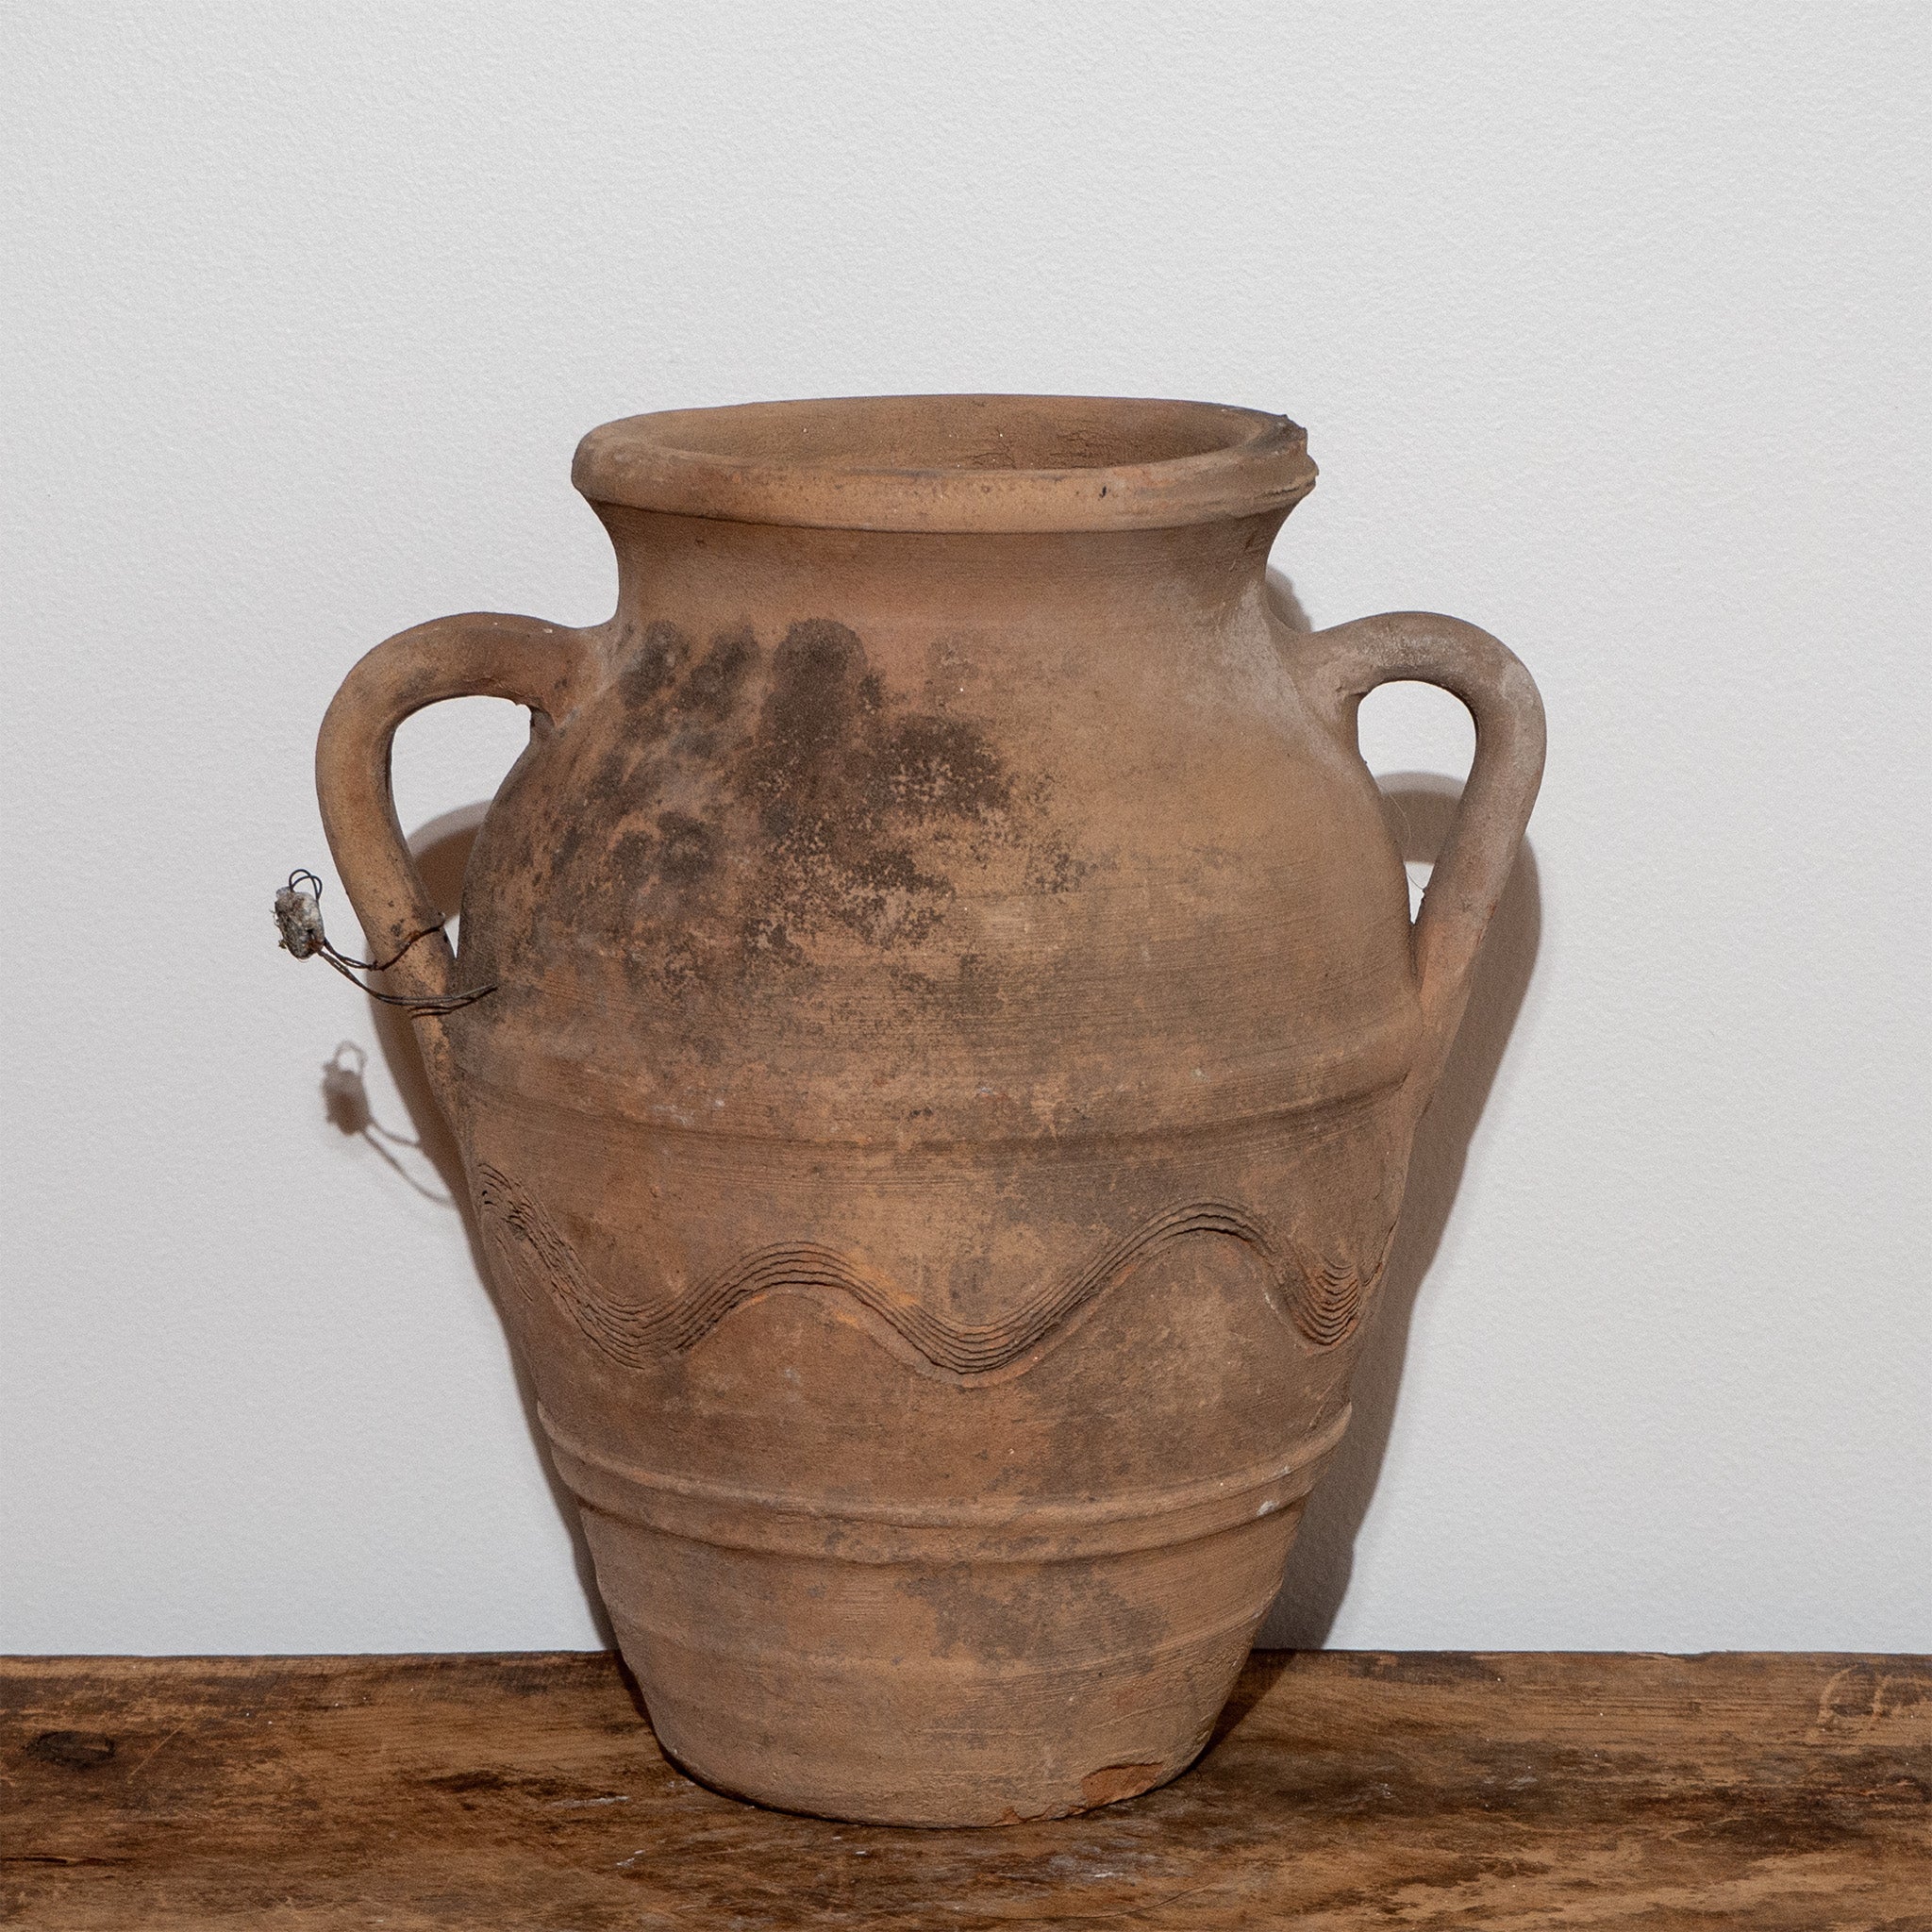 Vintage Turkish double handled jug urn on vintage wooden bench